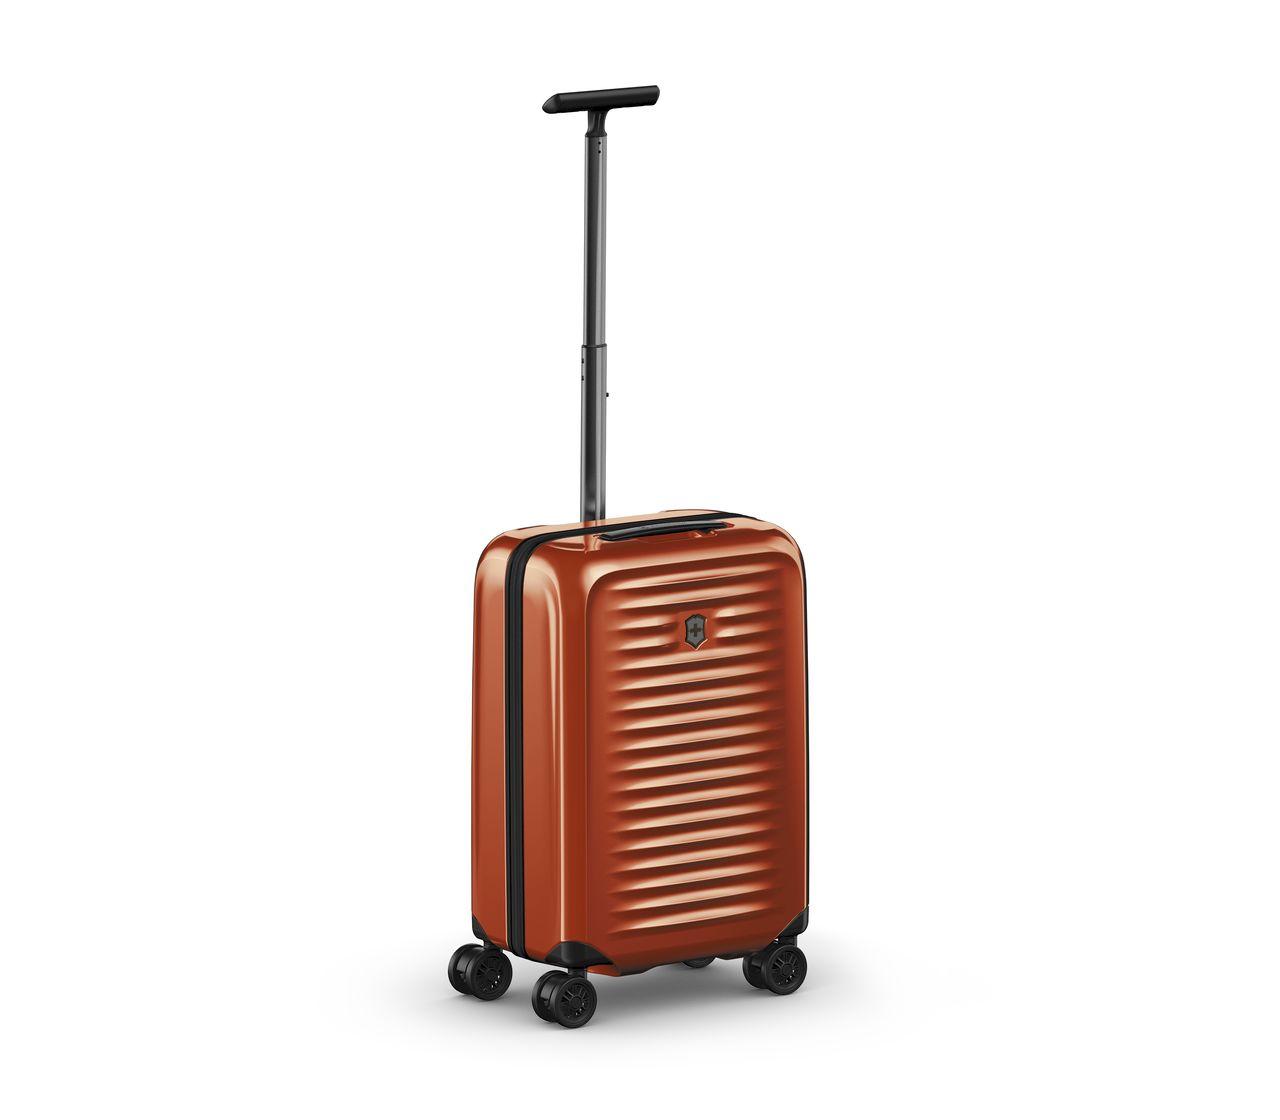 ビクトリノックス 公式 正規品 スーツケース エアロックス ミディアム ハードサイドケース 69 cm ORANGE 通販 